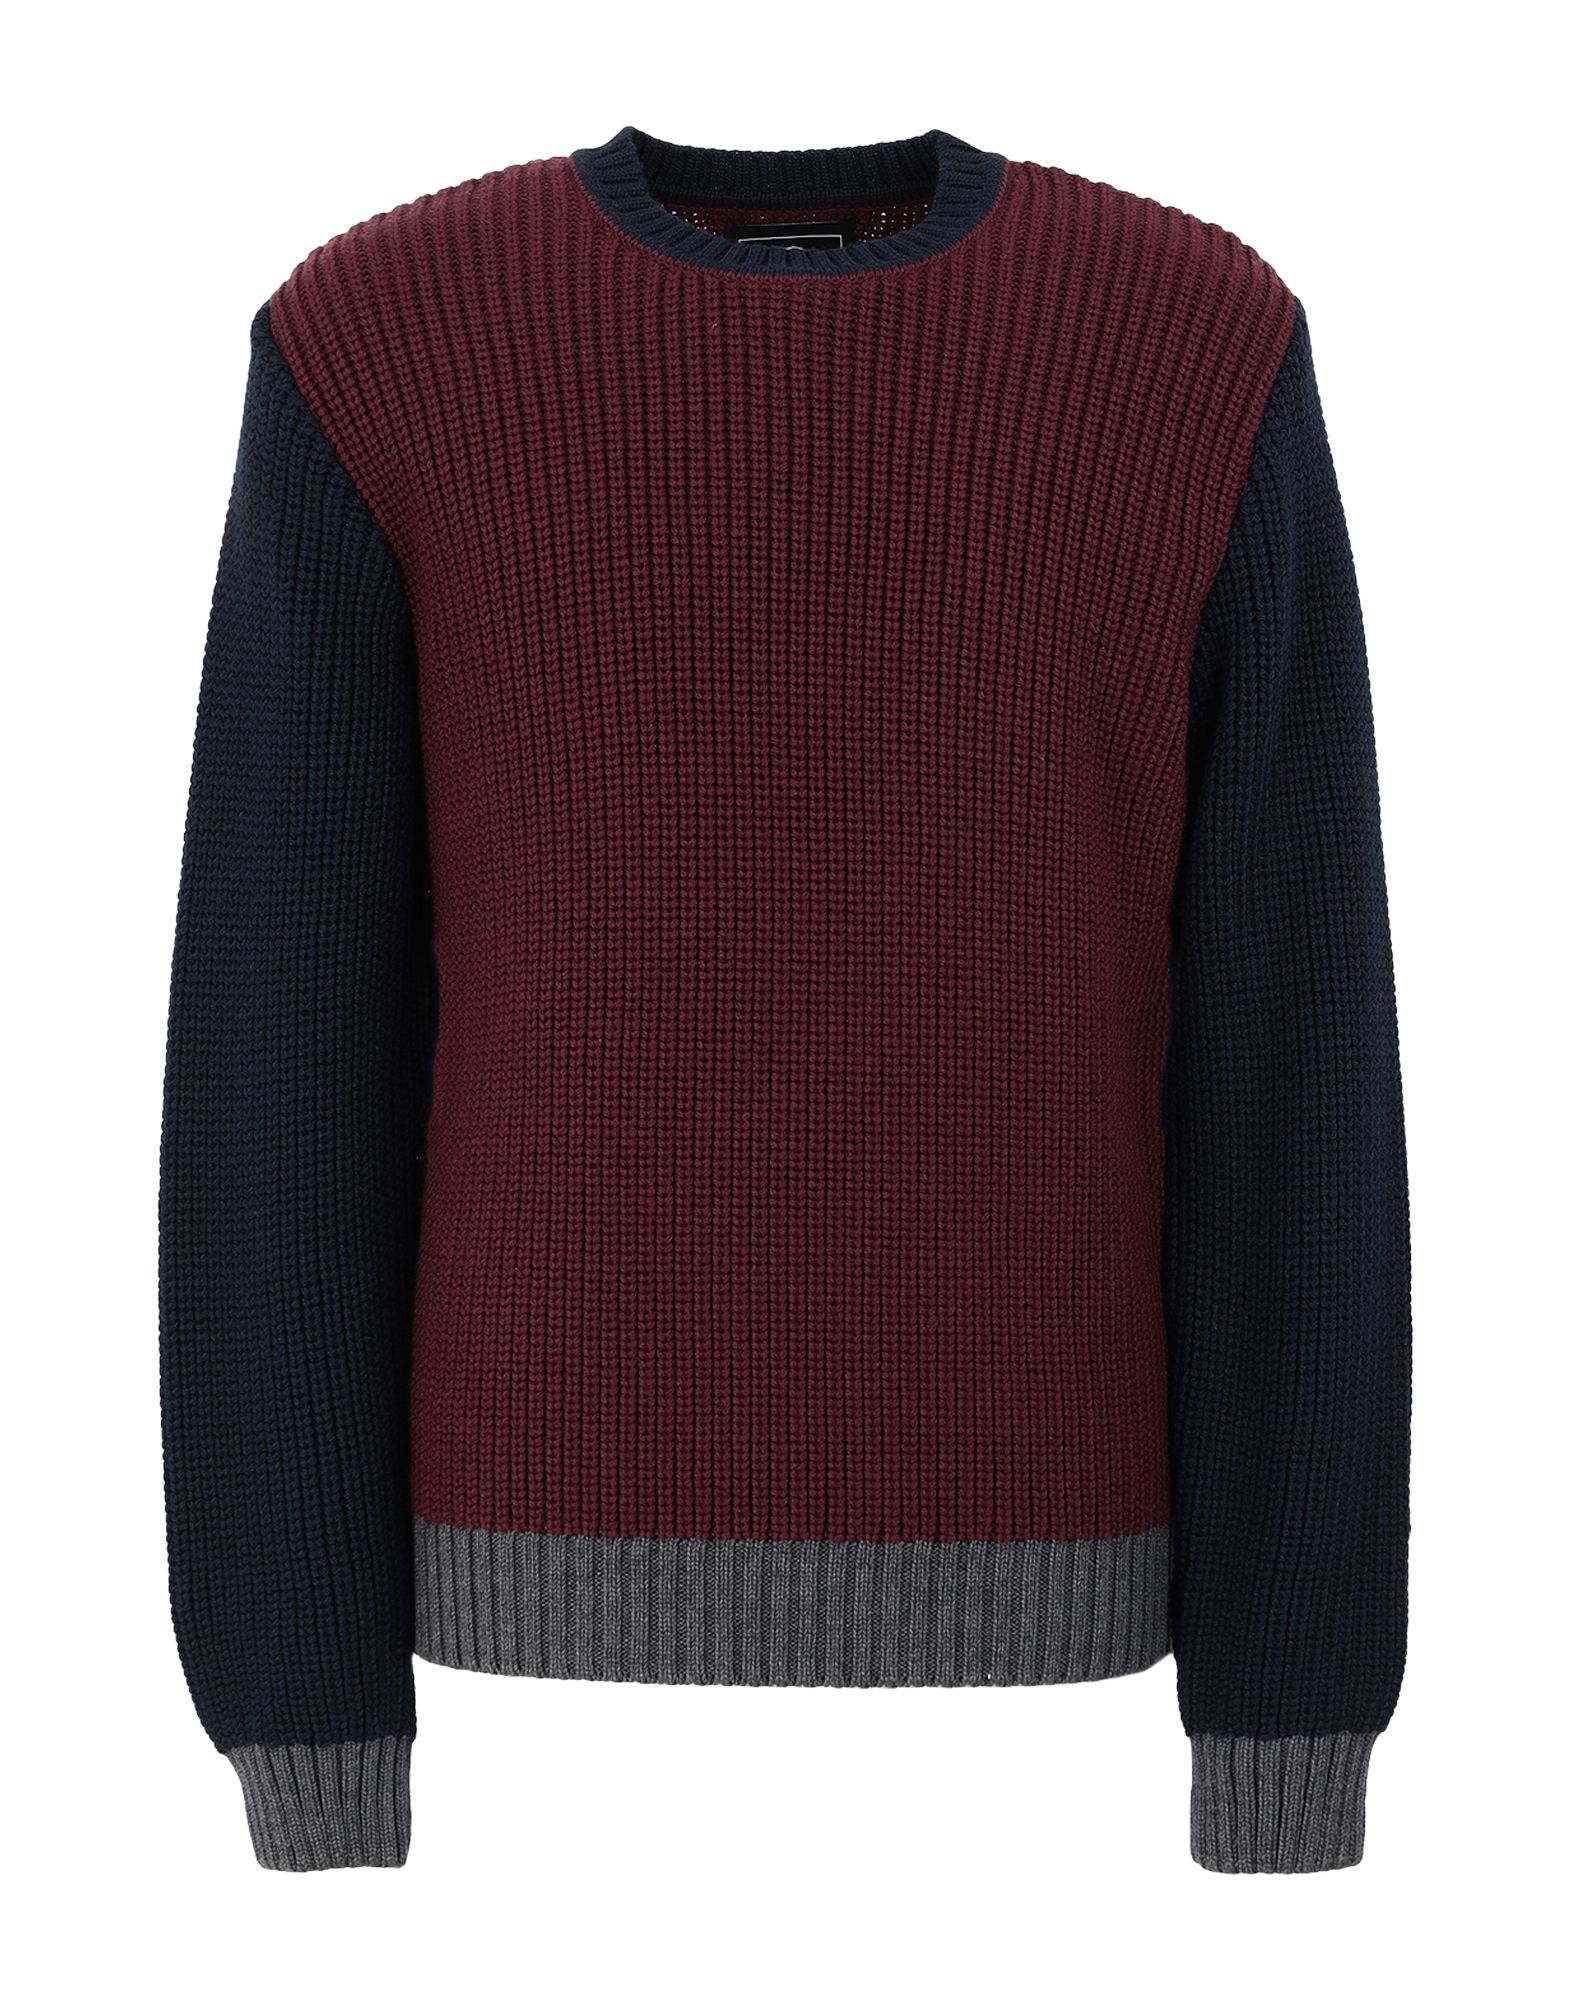 EDWIN Sweaters - Item 14059050